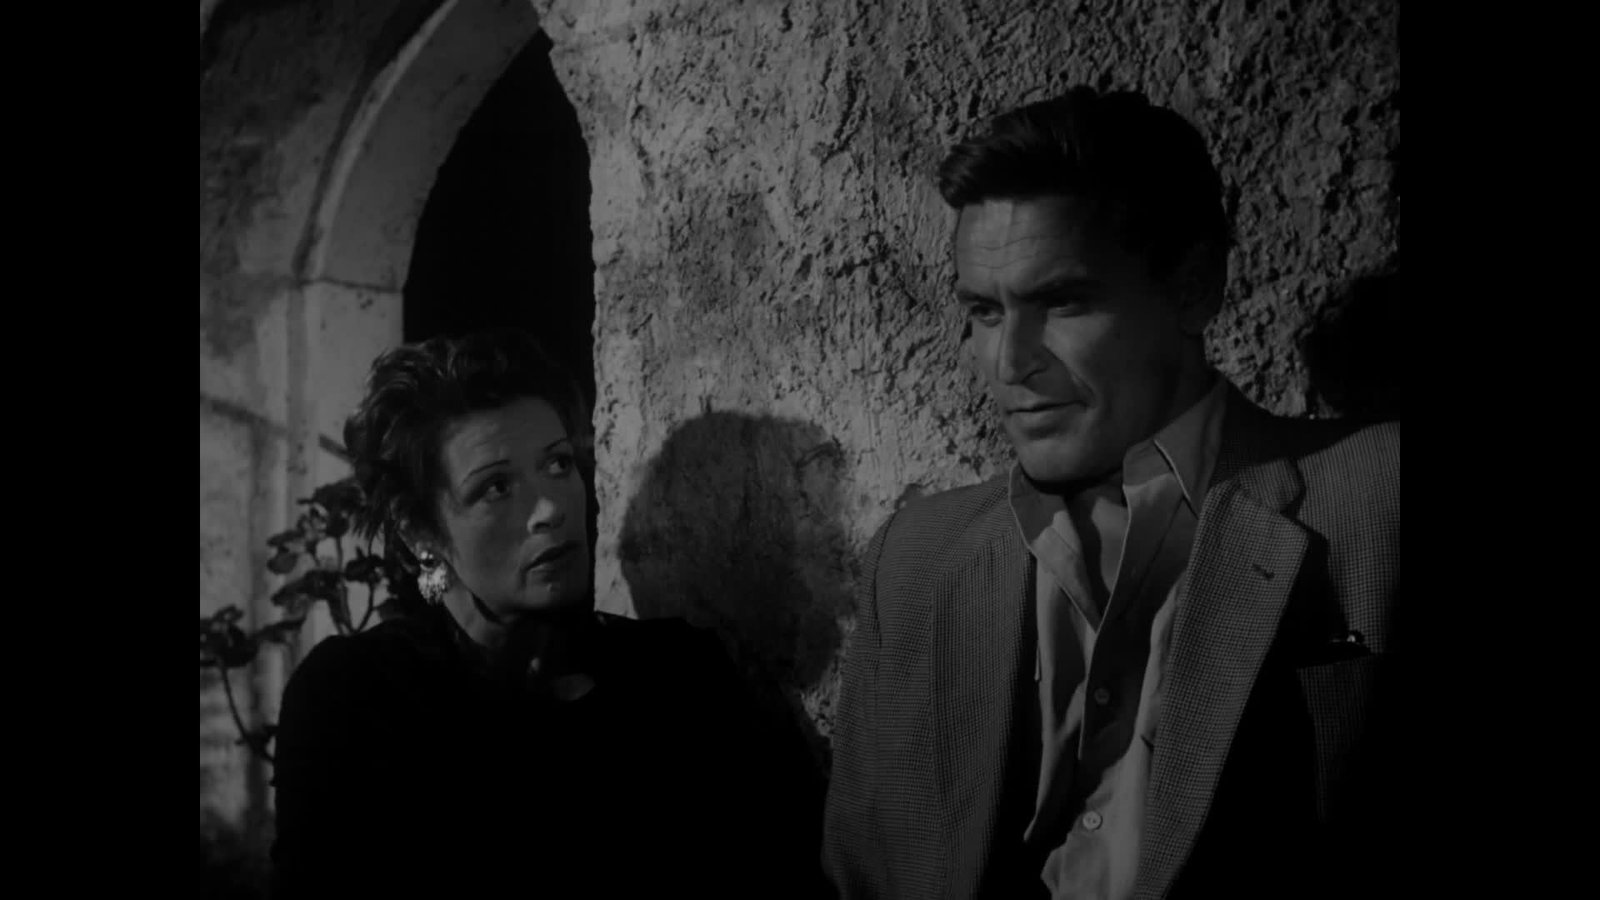 Das Haus an der Küste (1954) - Deutsche DVD-Premiere -  Ein Film von Bosko Kosanovic mit Sybille Schmitz und René Deltgen - Limited Edition  (DVD)